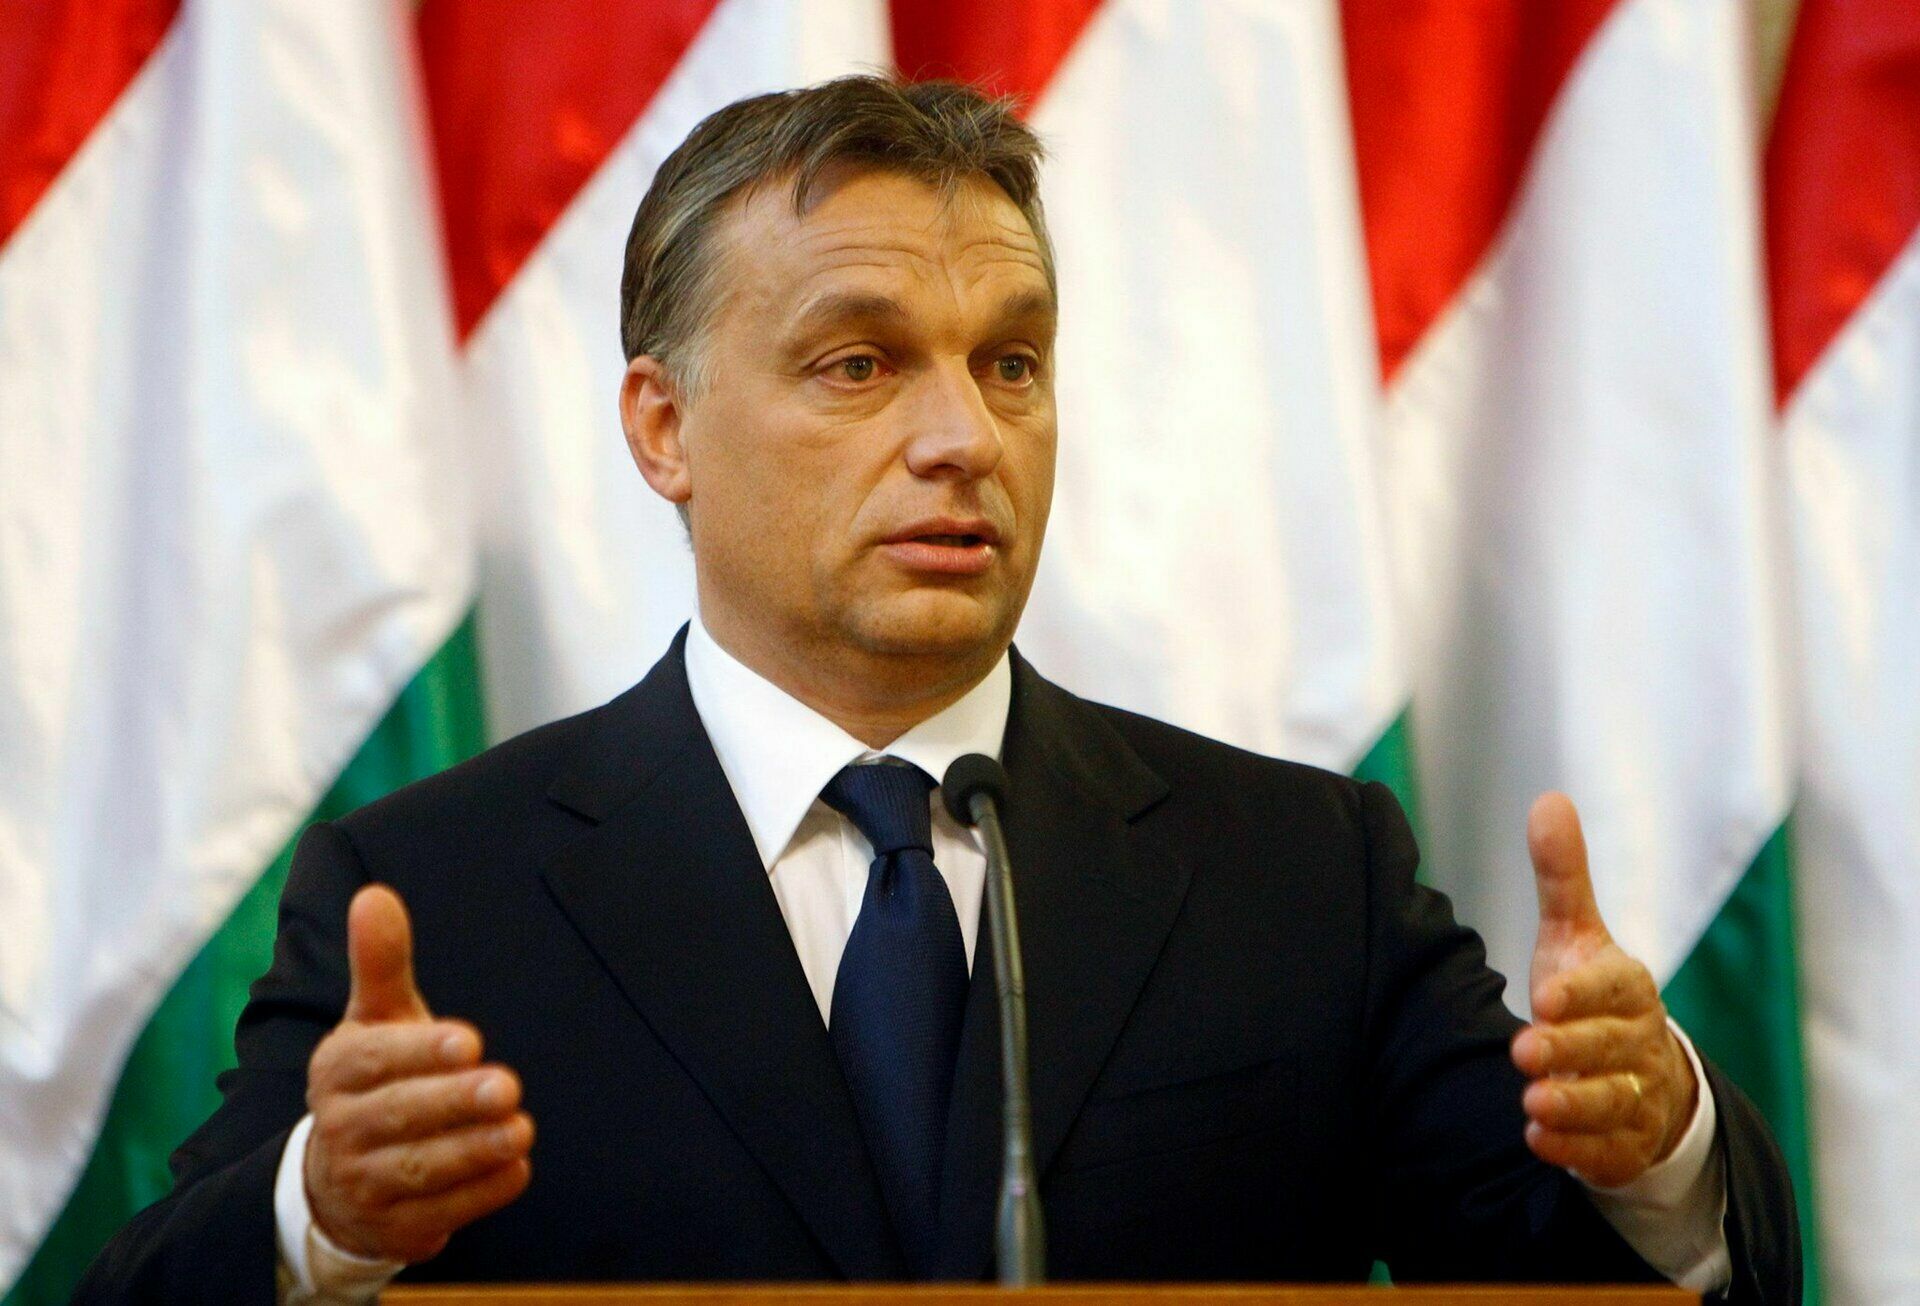 В Венгрии на выборах победила партия Виктора Орбана: Будапешт взял курс на Москву?